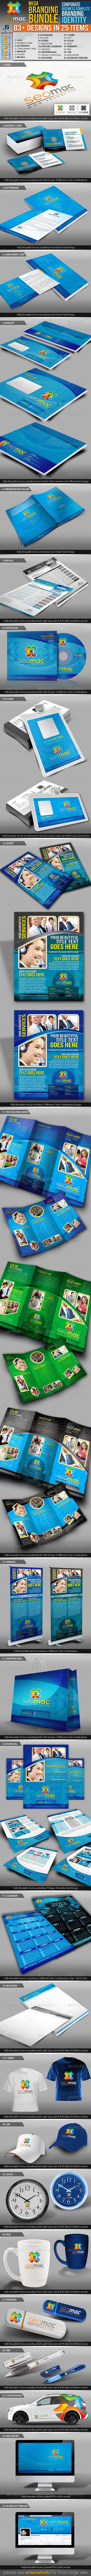 مجموعه برند تجاری مگا و کارت ویزیت شرکتی SeoMac